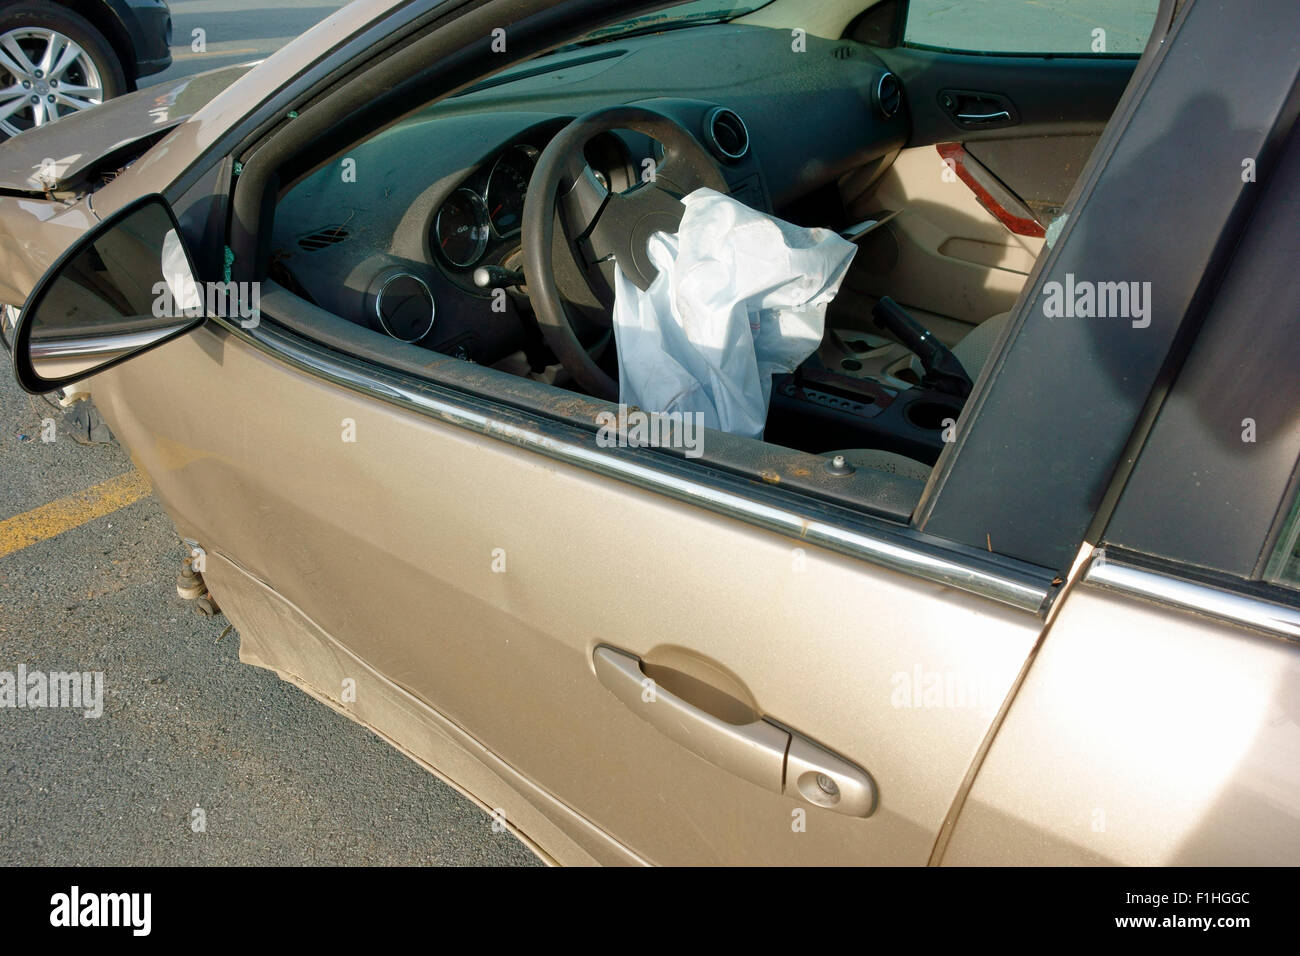 Un véhicule automobile accident sur une autoroute montrant le côté conducteur airbag volant qui a été activé ou gonflés Banque D'Images